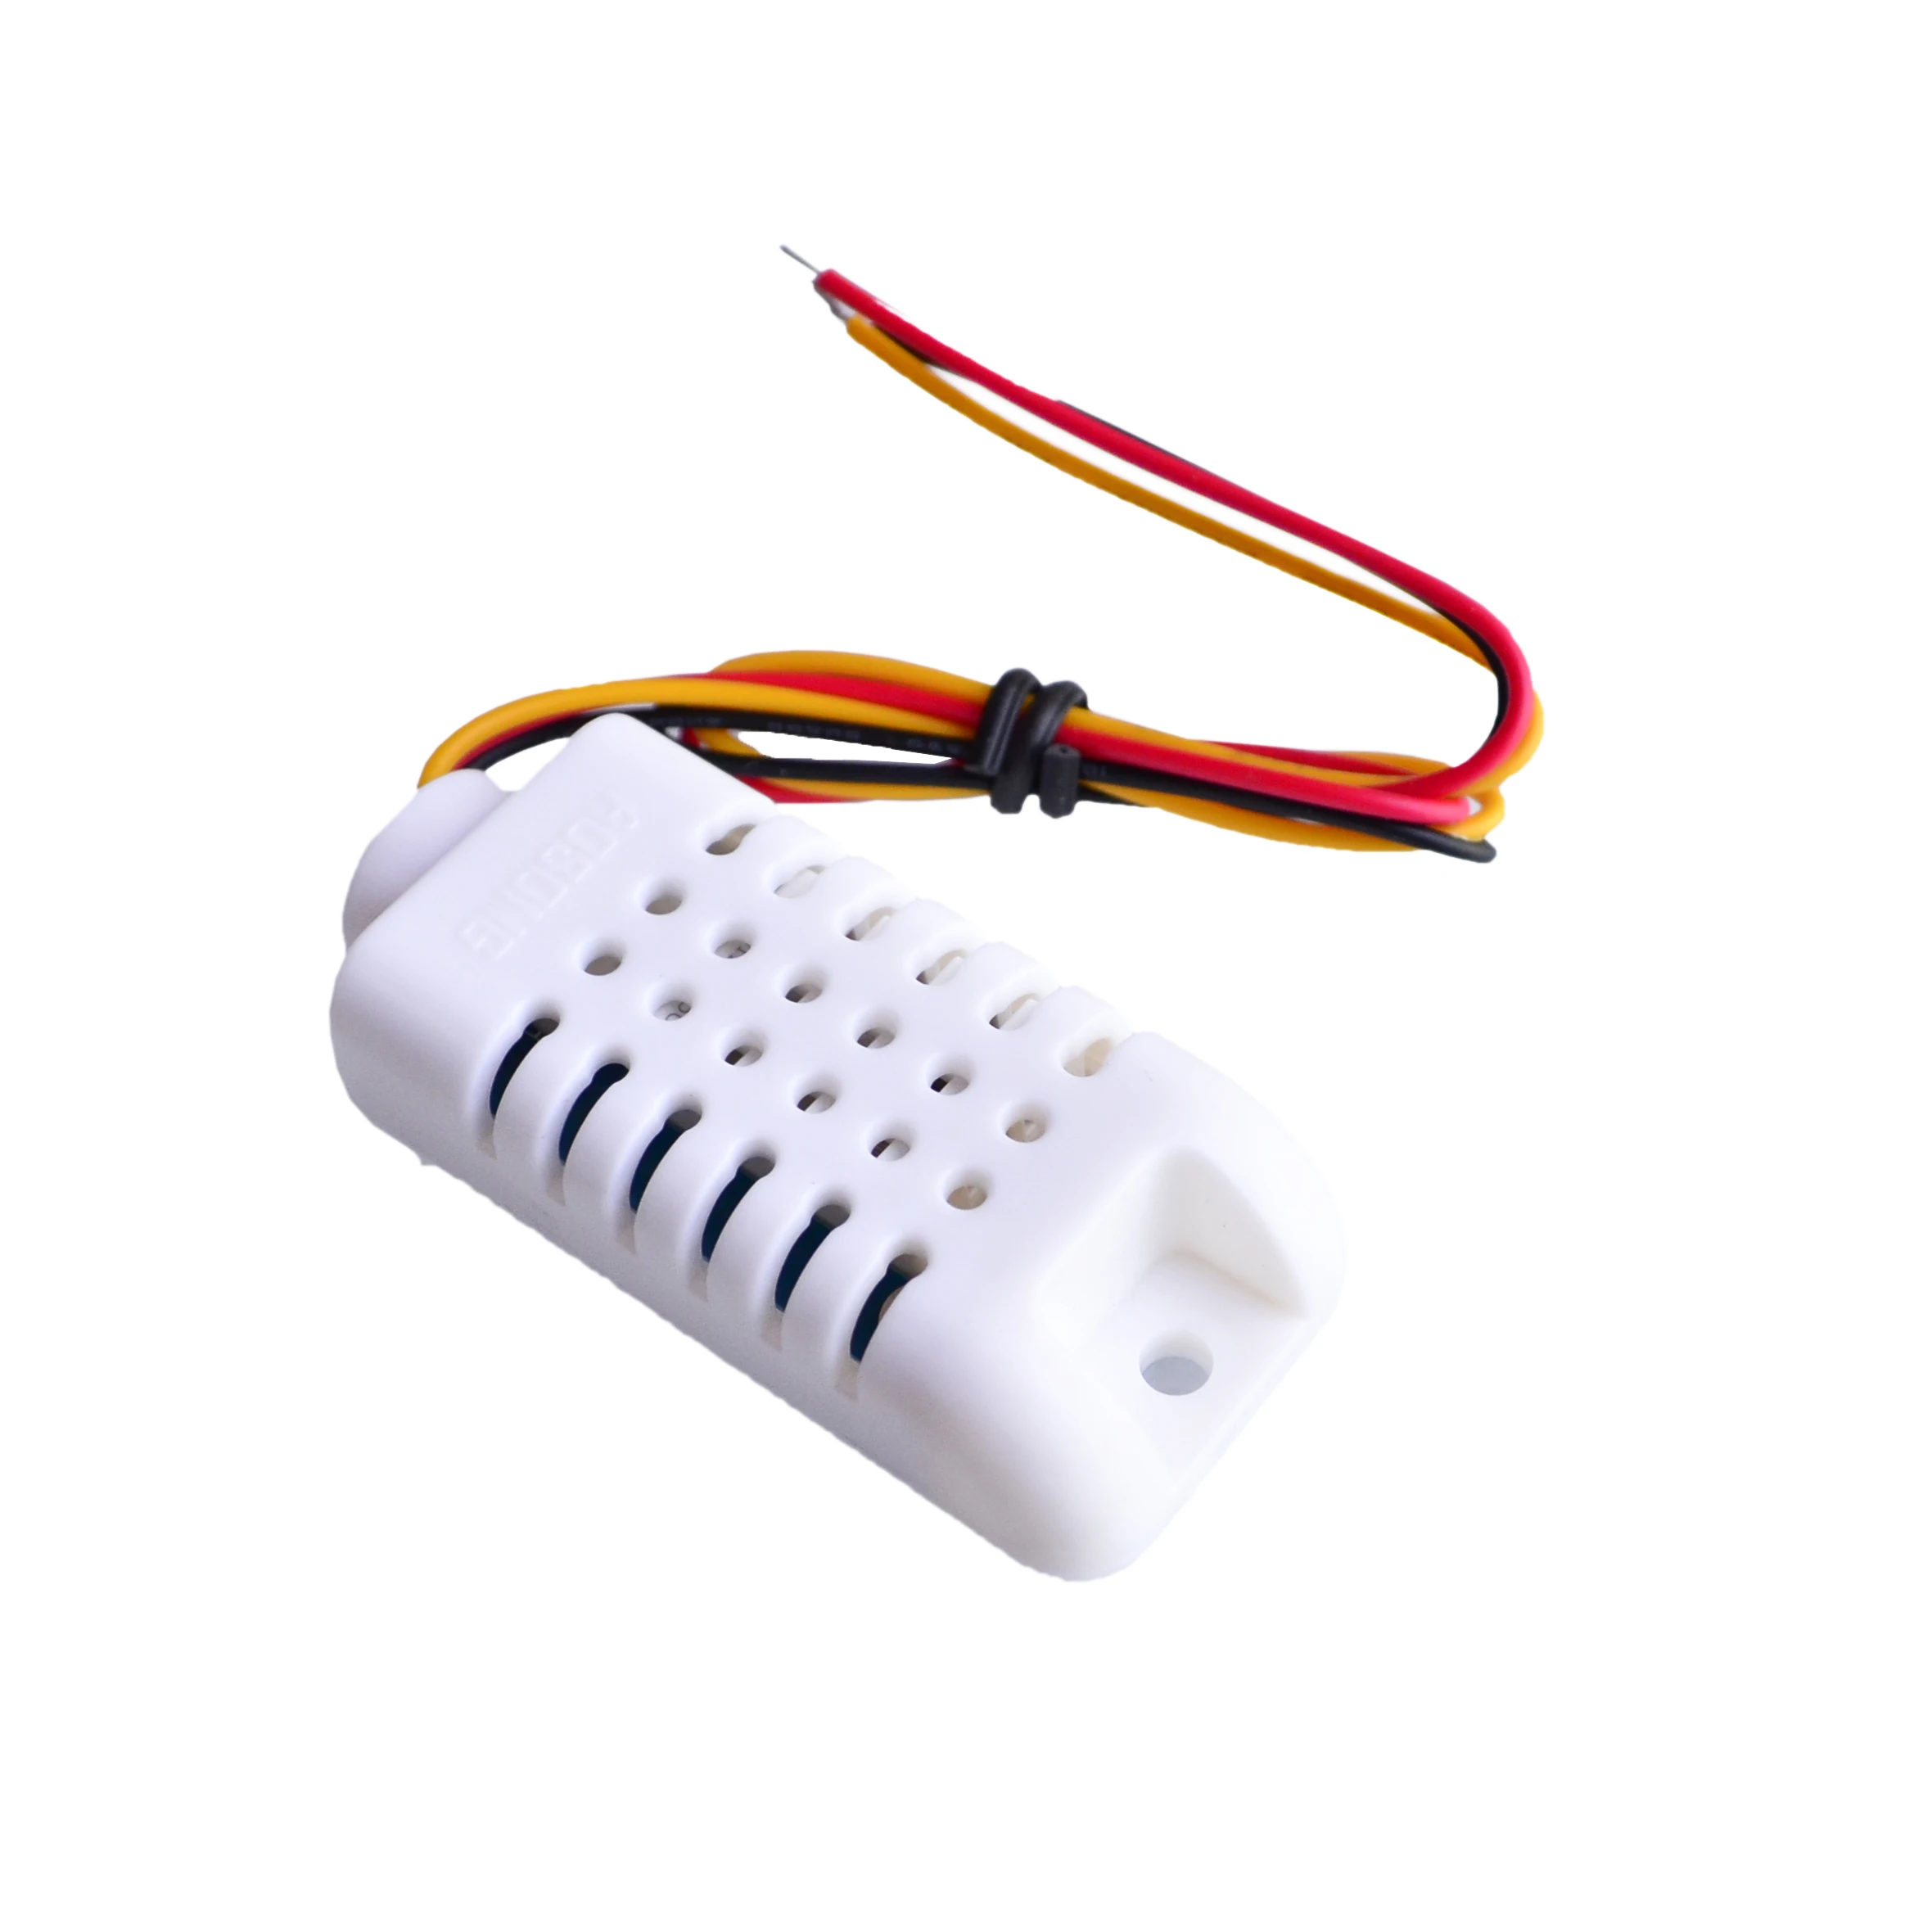 5PCS/LOTE de Cable DHT22/AM2302 Digital Sensor de Temperatura y Humedad AM2302 1